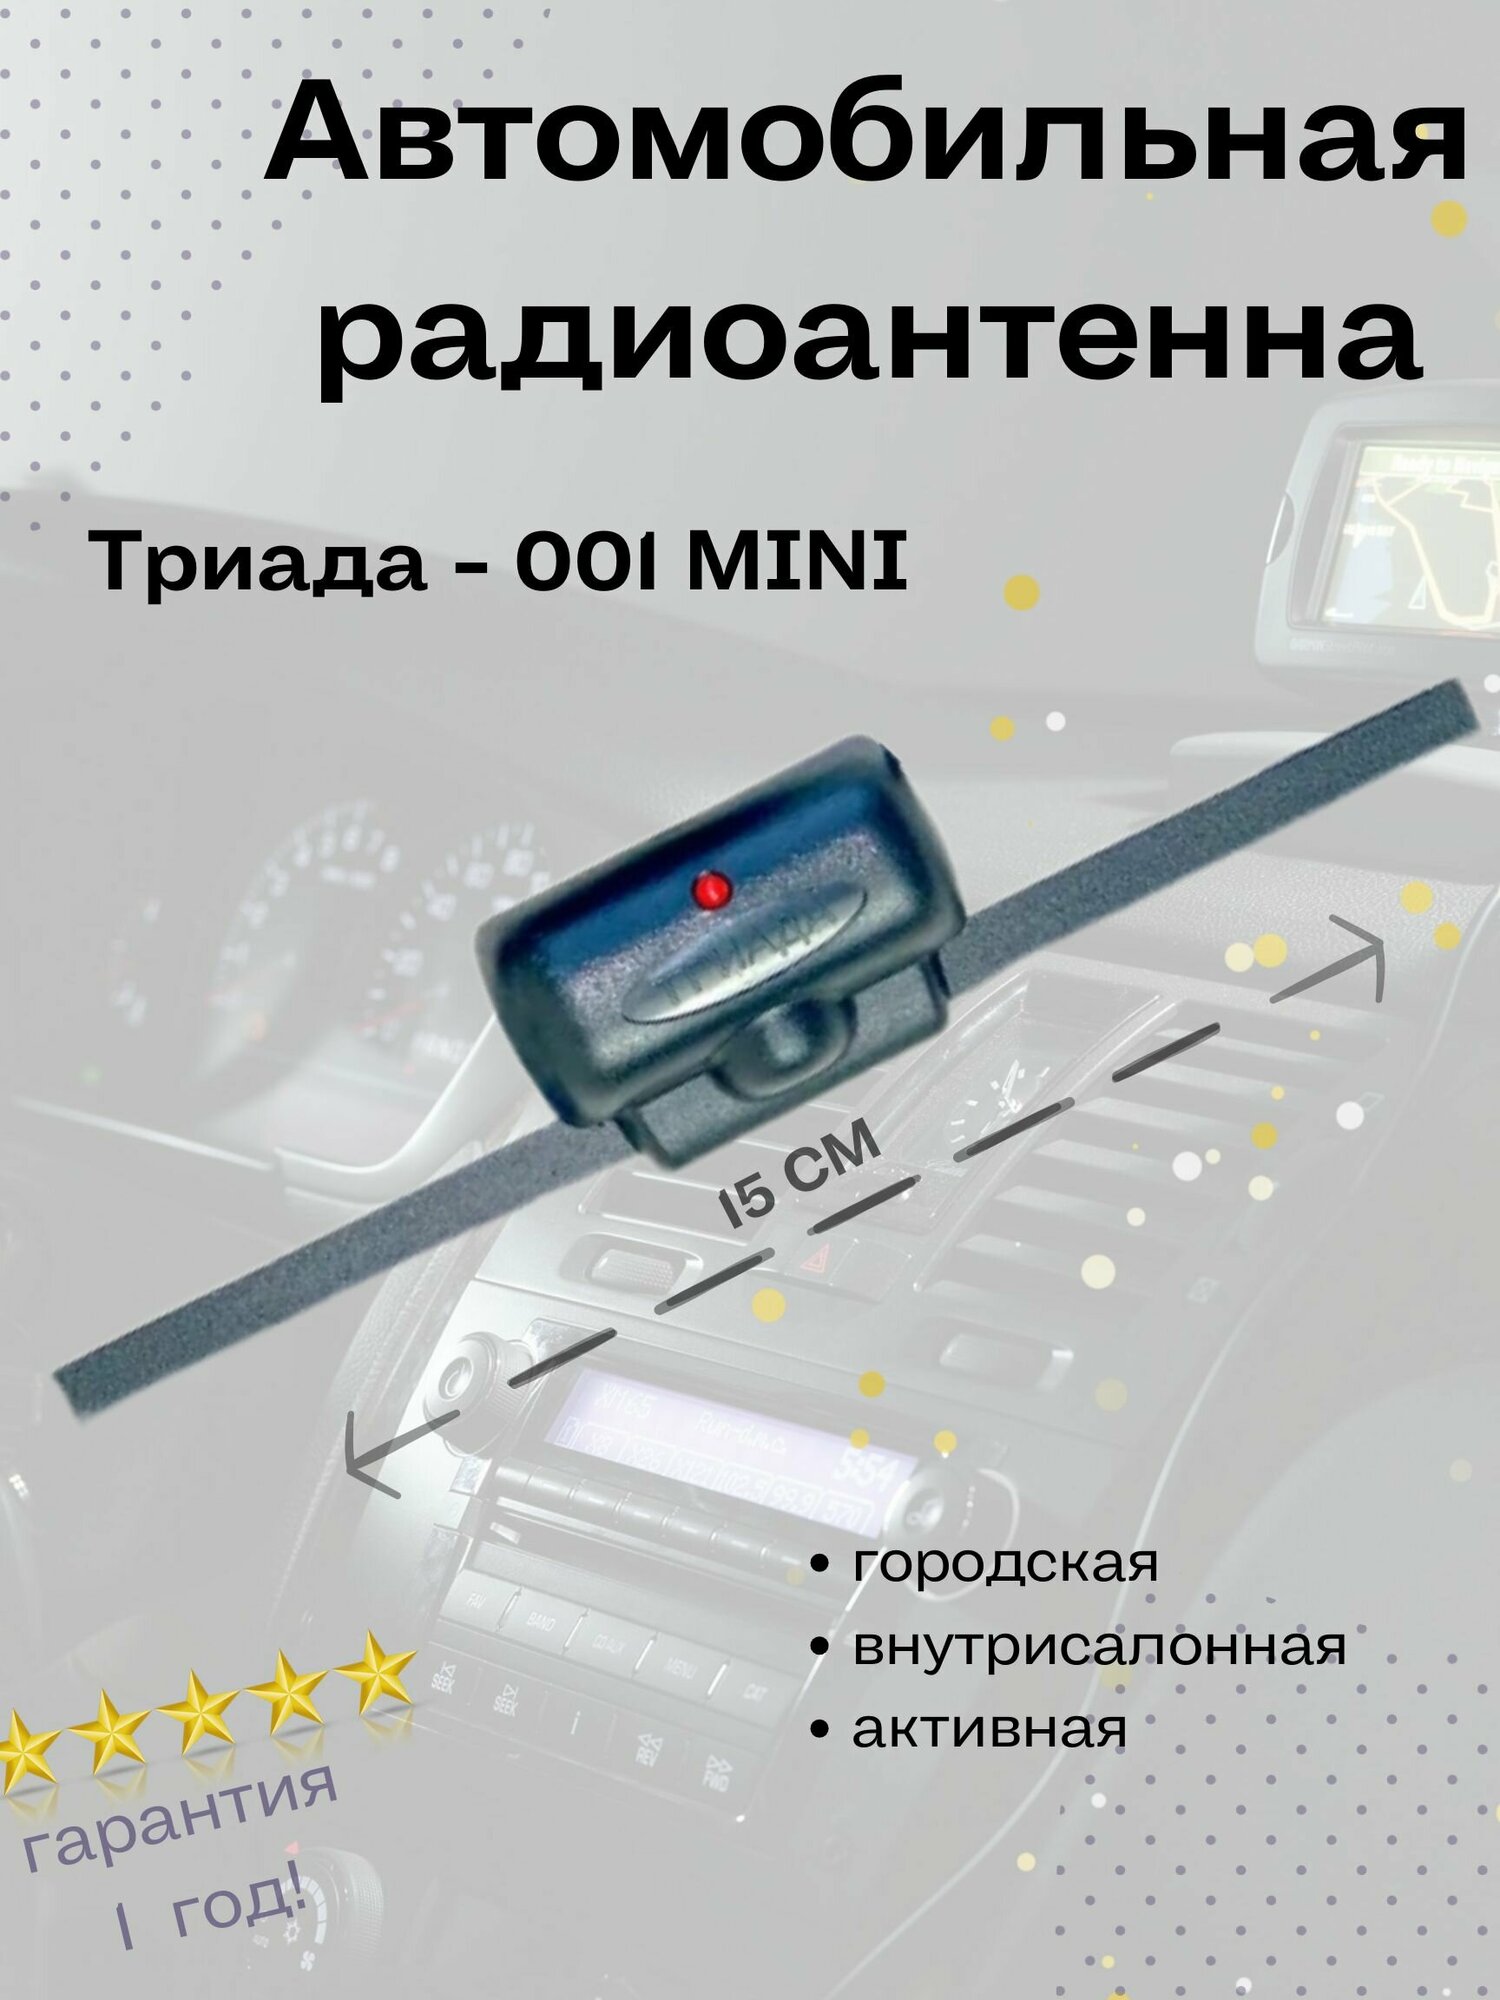 Автомобильная антенна для радио Триада 001 Mini всеволновая активная